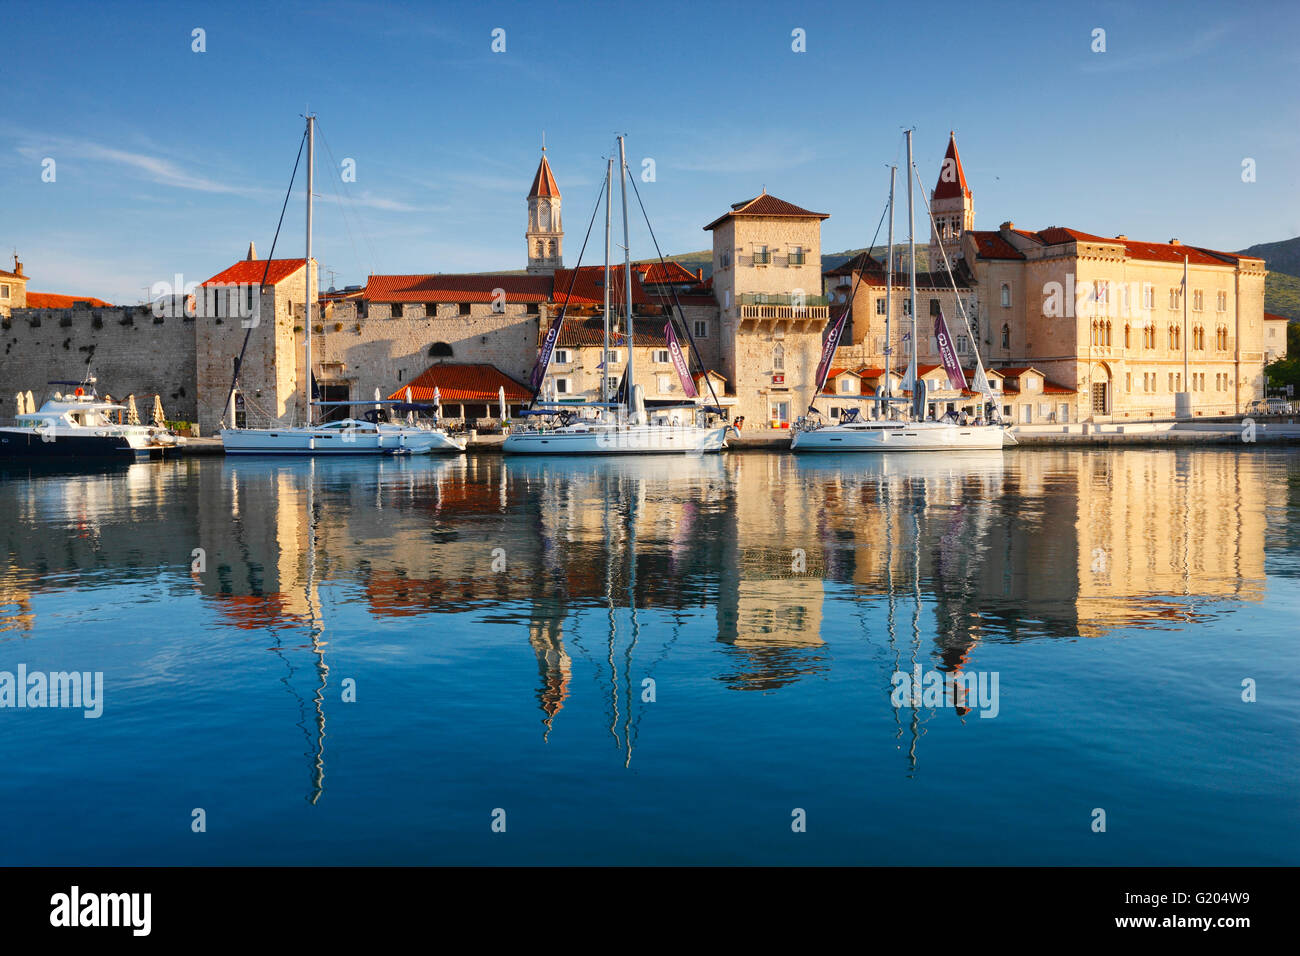 La ville de Trogir, Croatie au bord de l'eau Banque D'Images